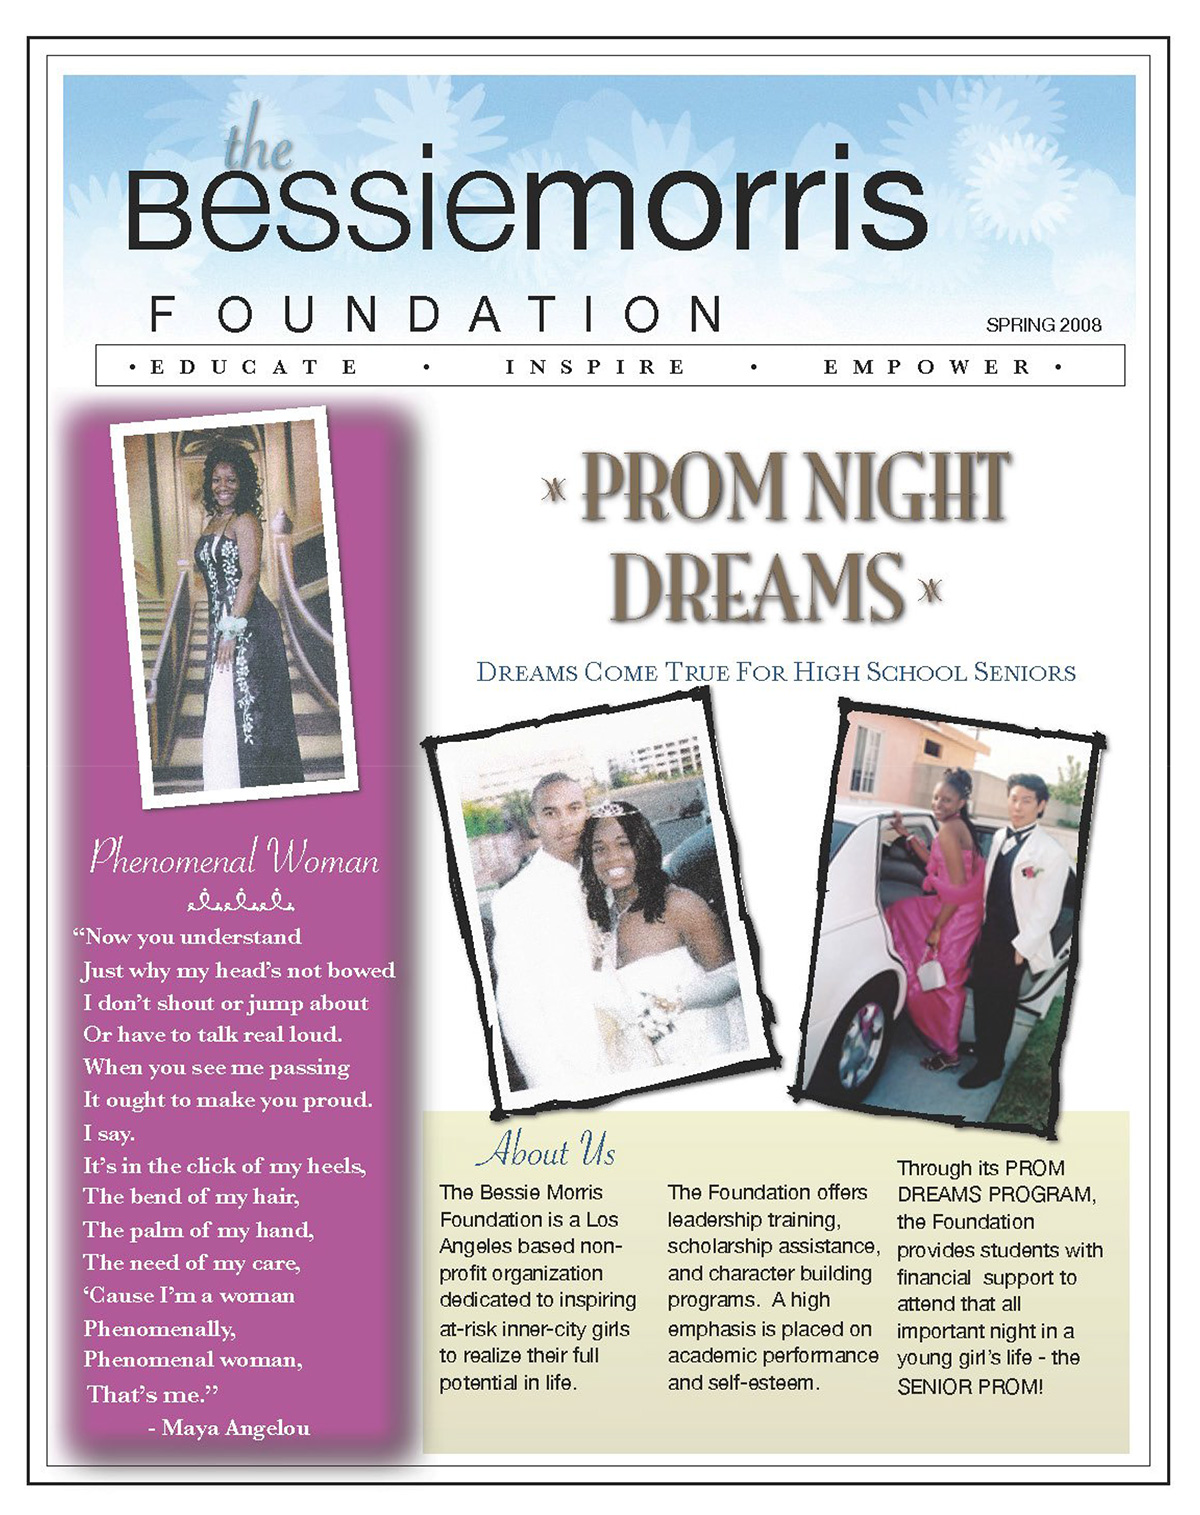 Bessie Morris Foundation newsletter Spring 2008 edition